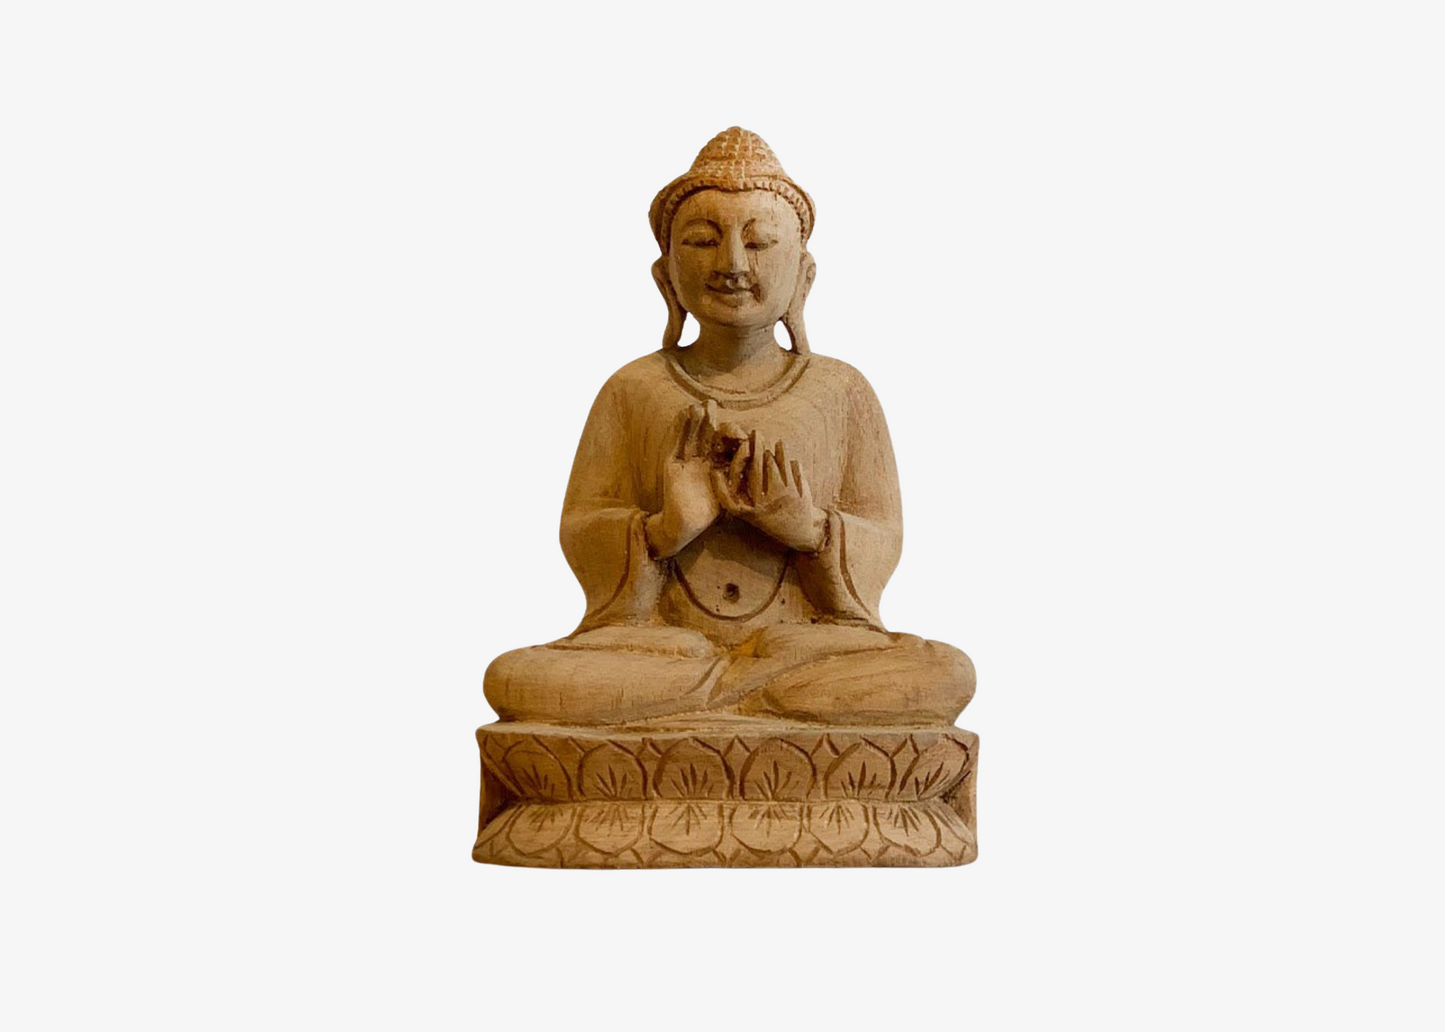 Sitting Buddha - Dharmachakra Mudra